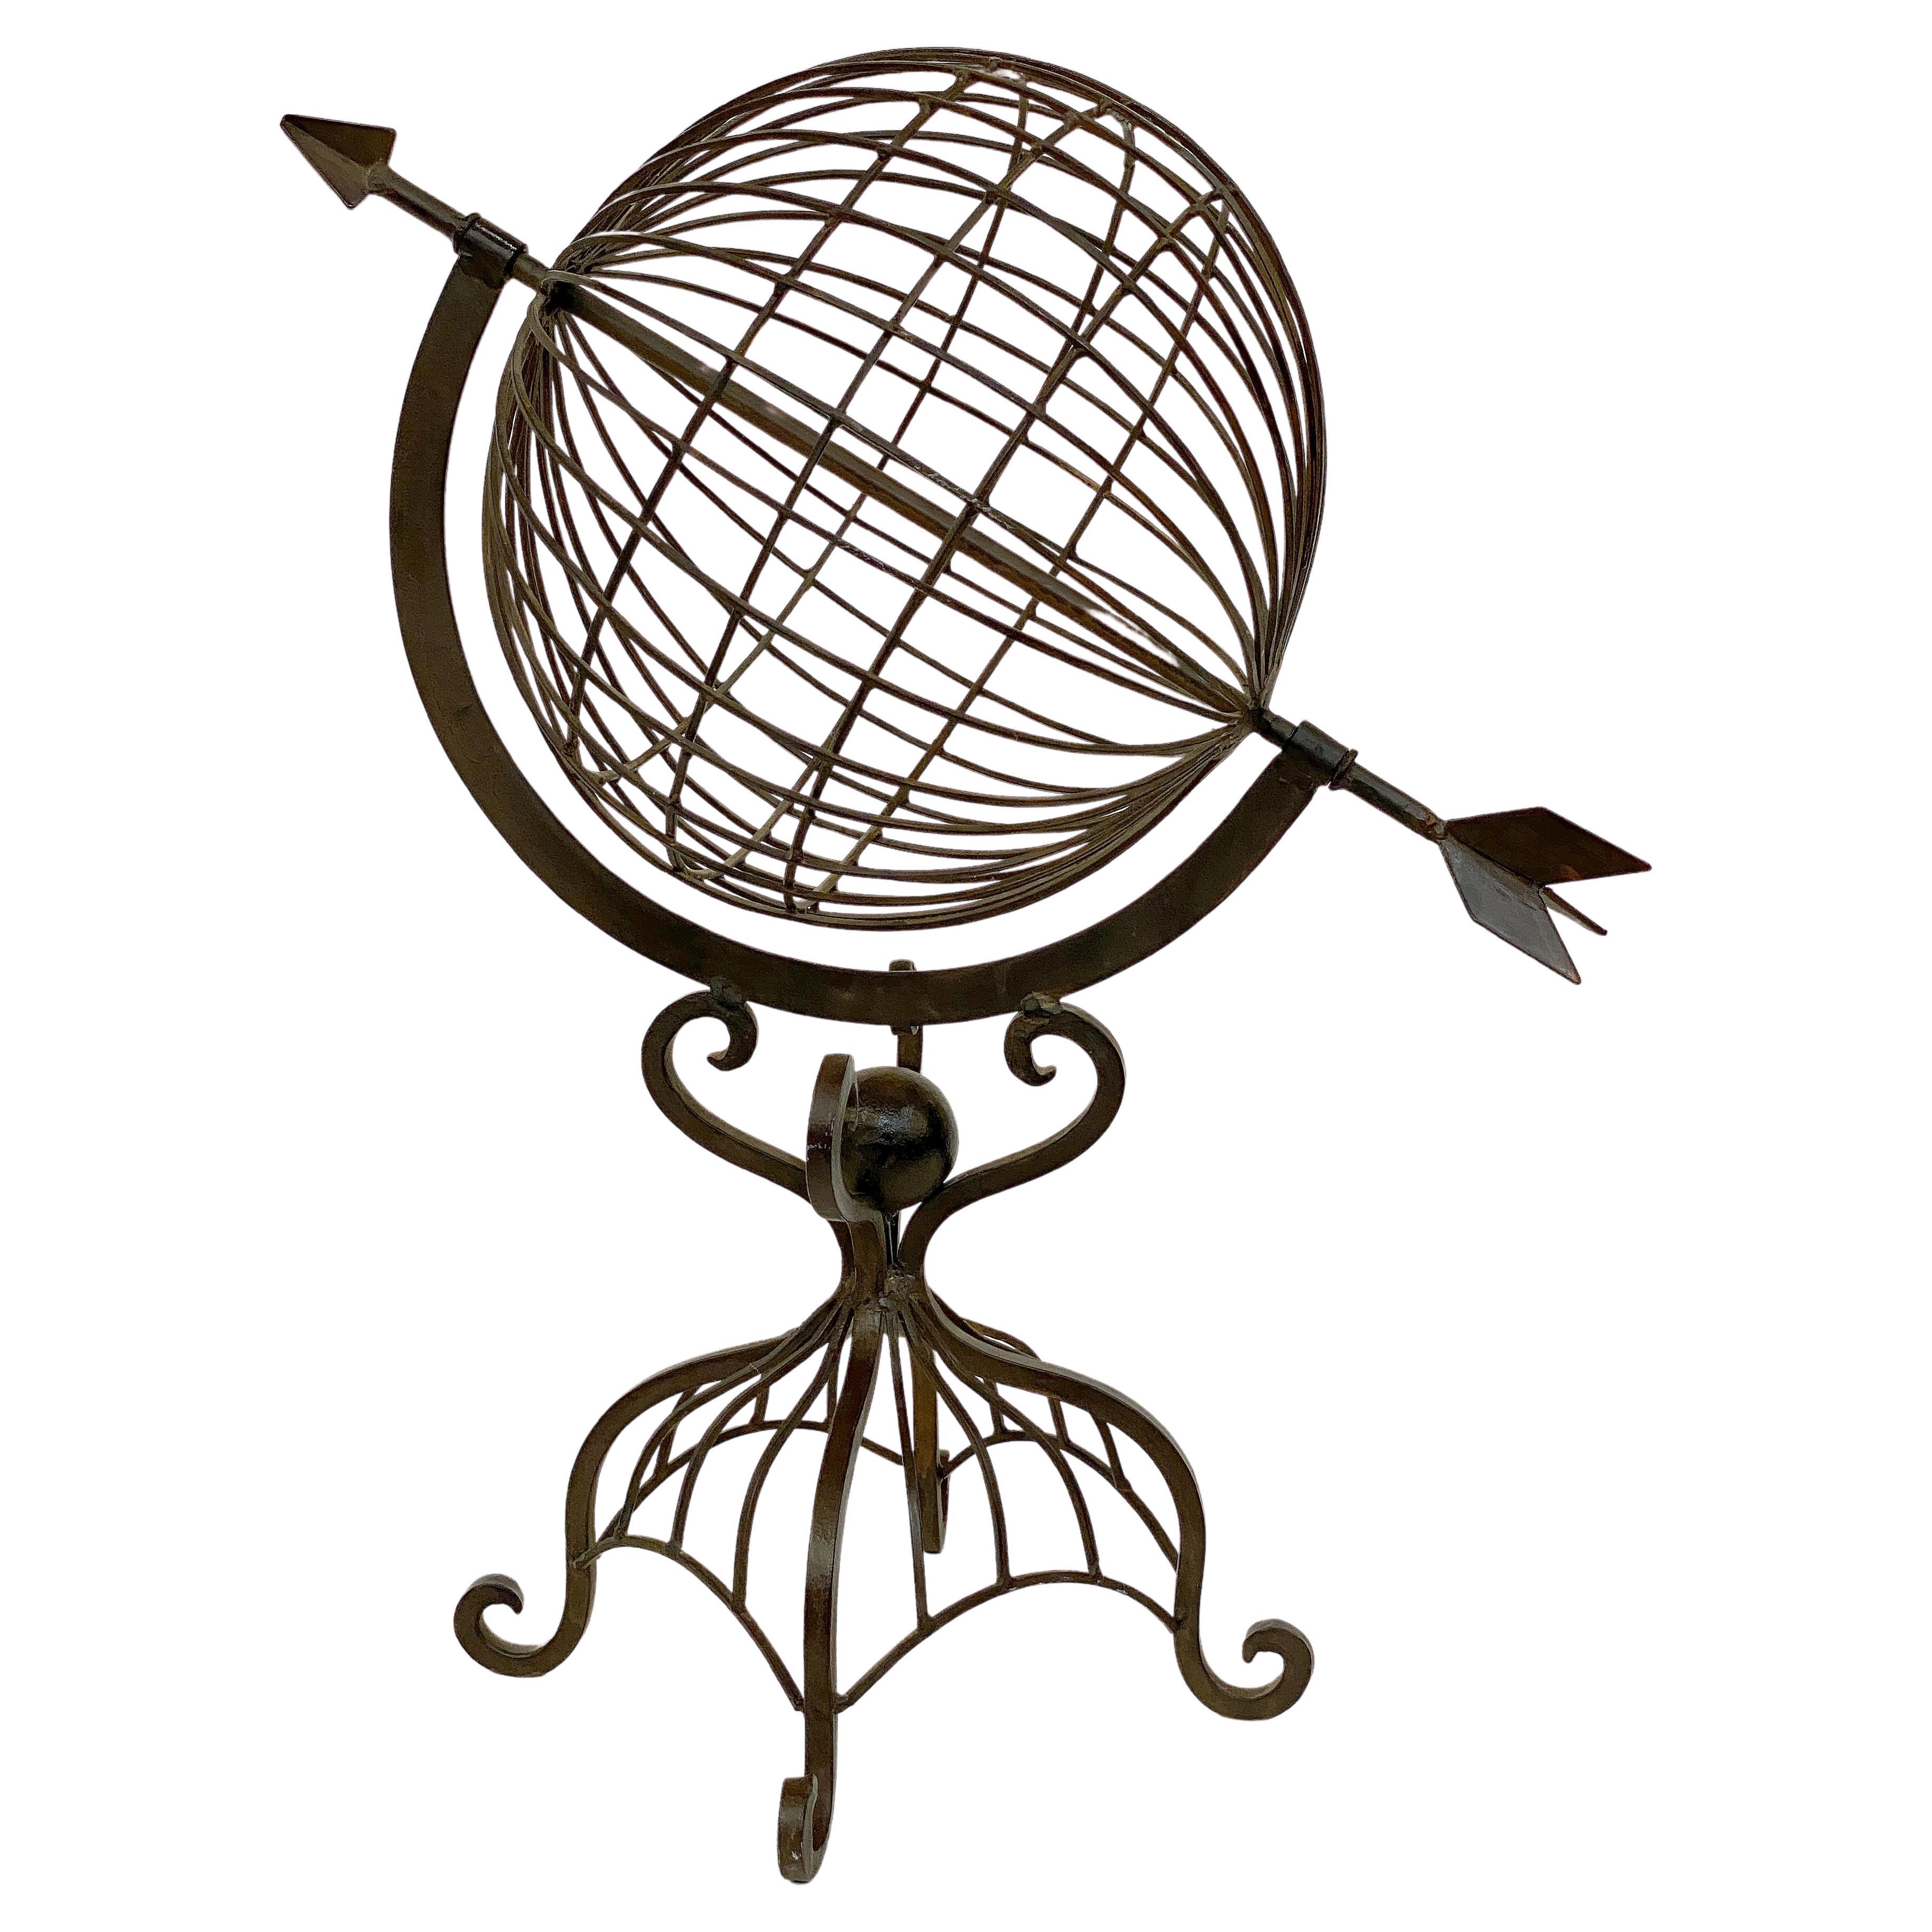 Sphère armillaire française sur pied ou ornement de jardin en fer forgé